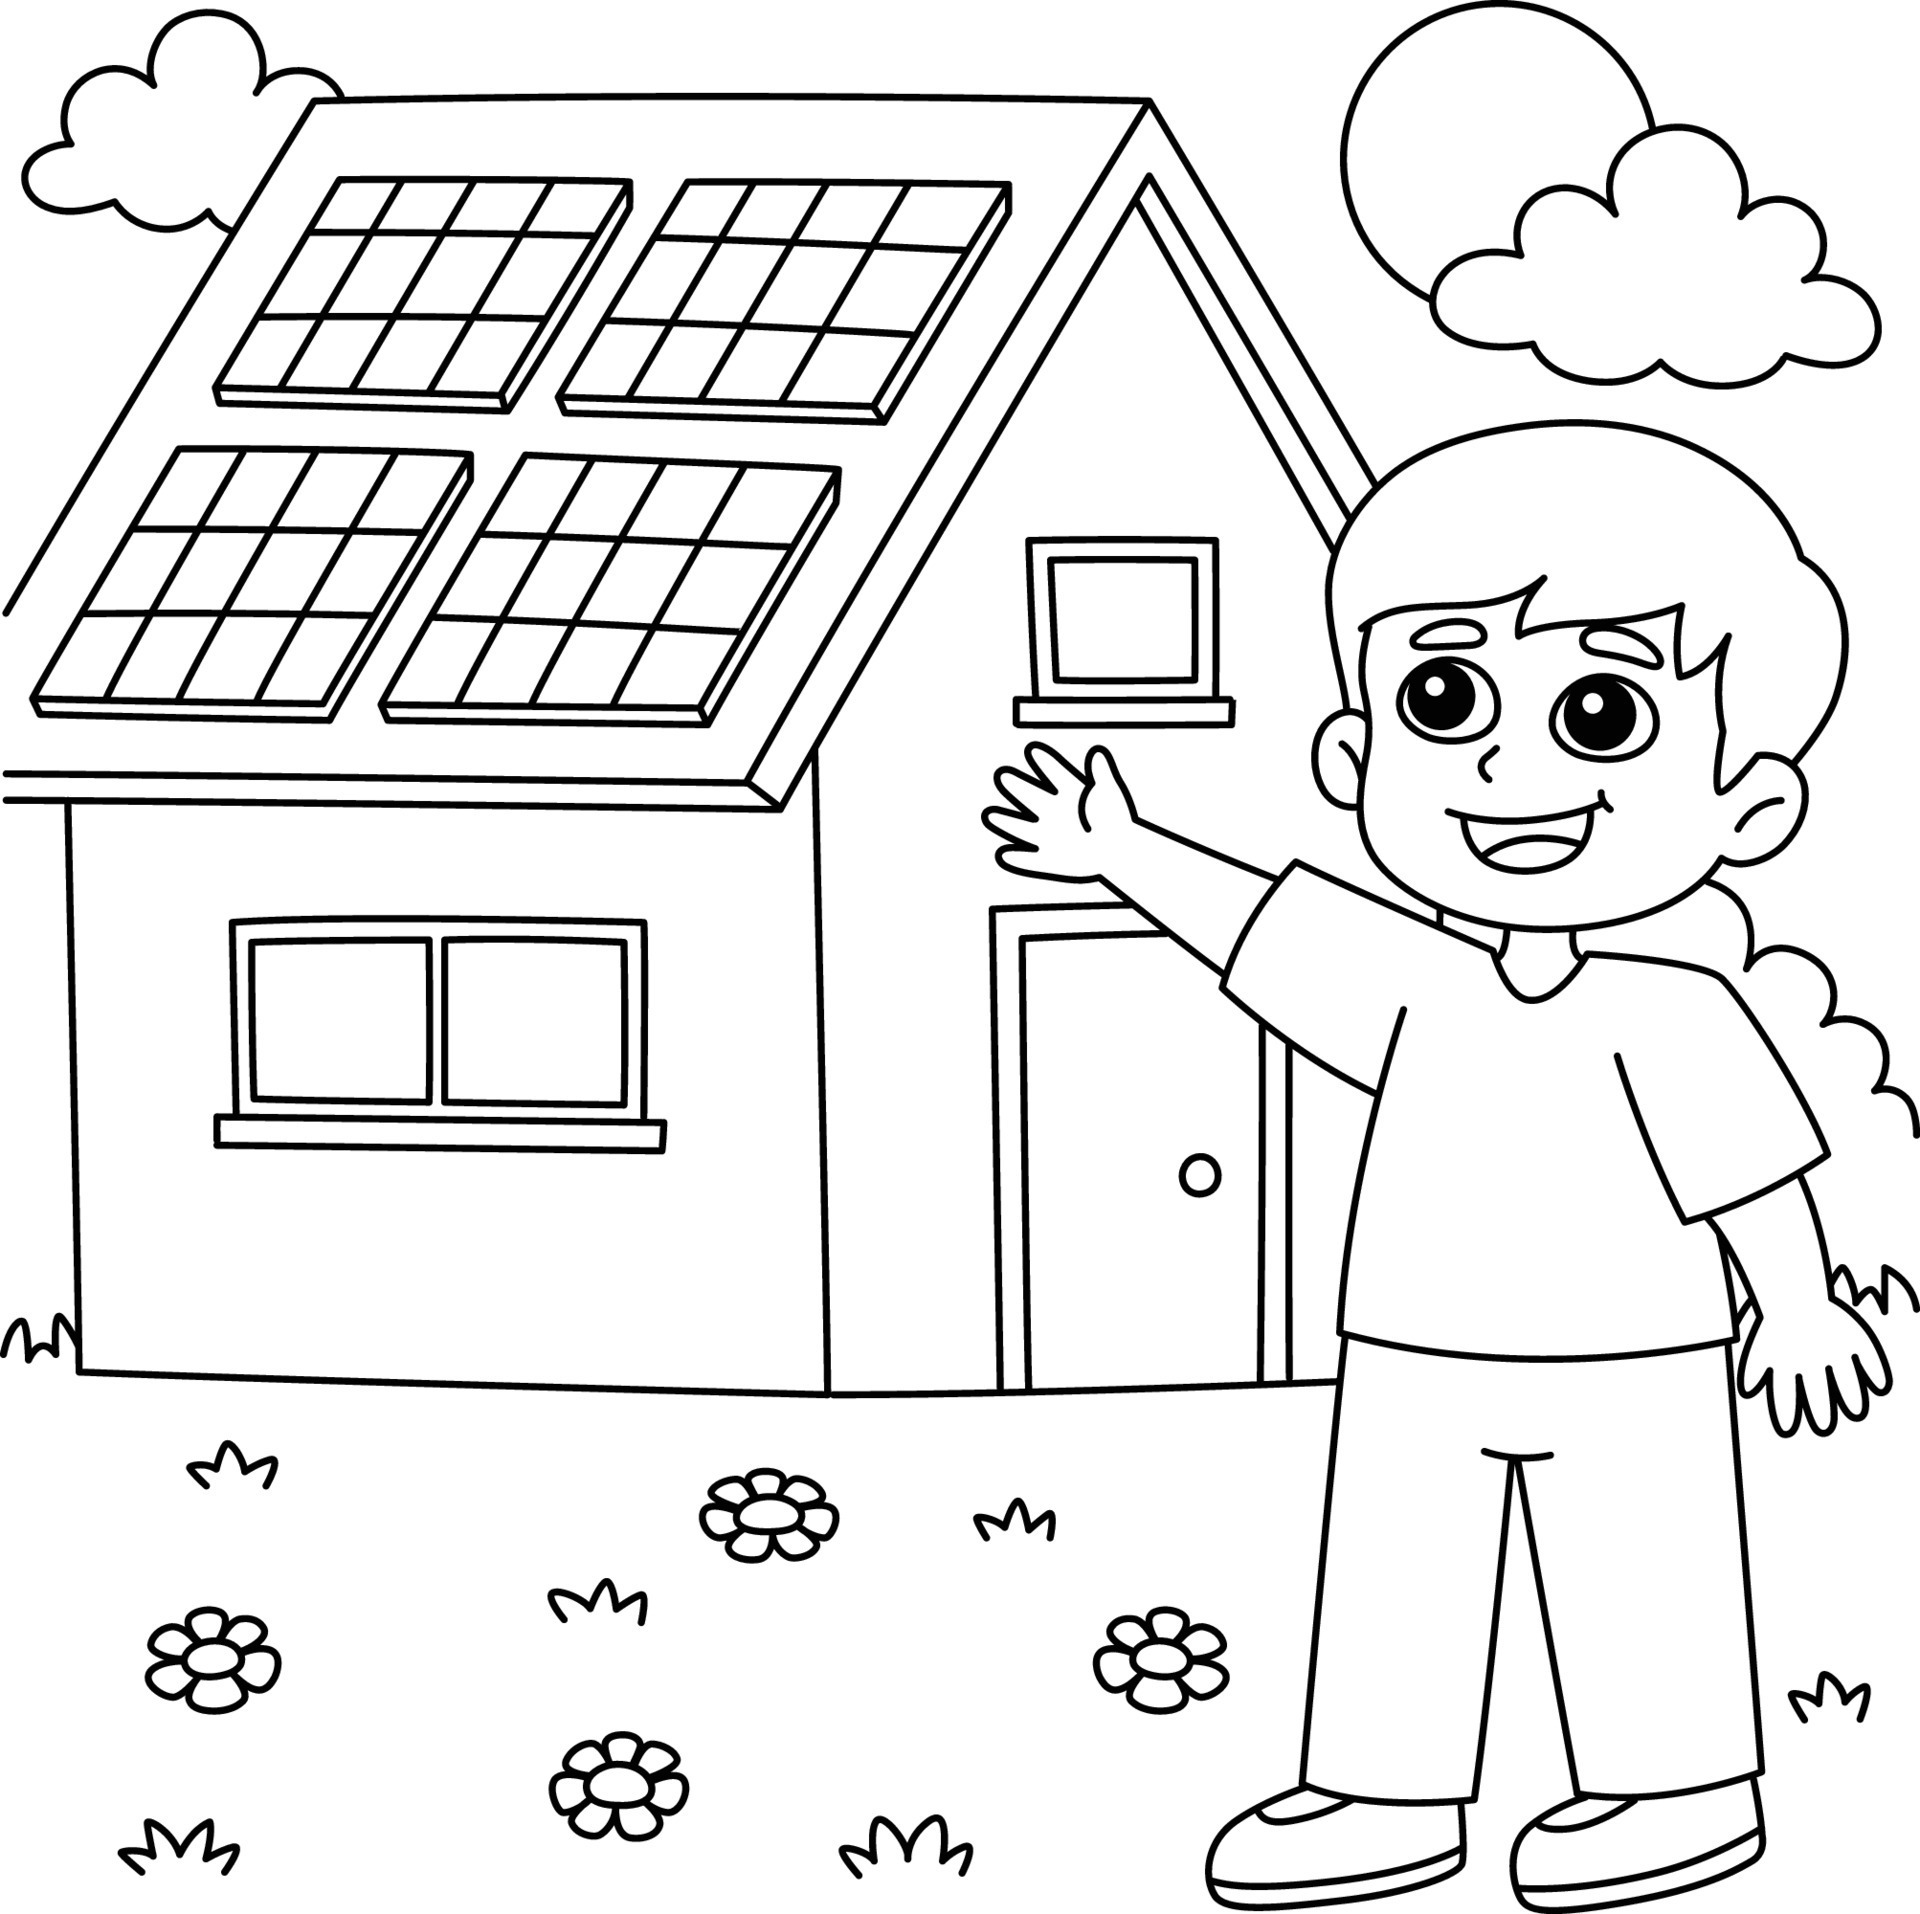 desenho de menino com uma casa de painel solar para colorir 17023007 Vetor  no Vecteezy